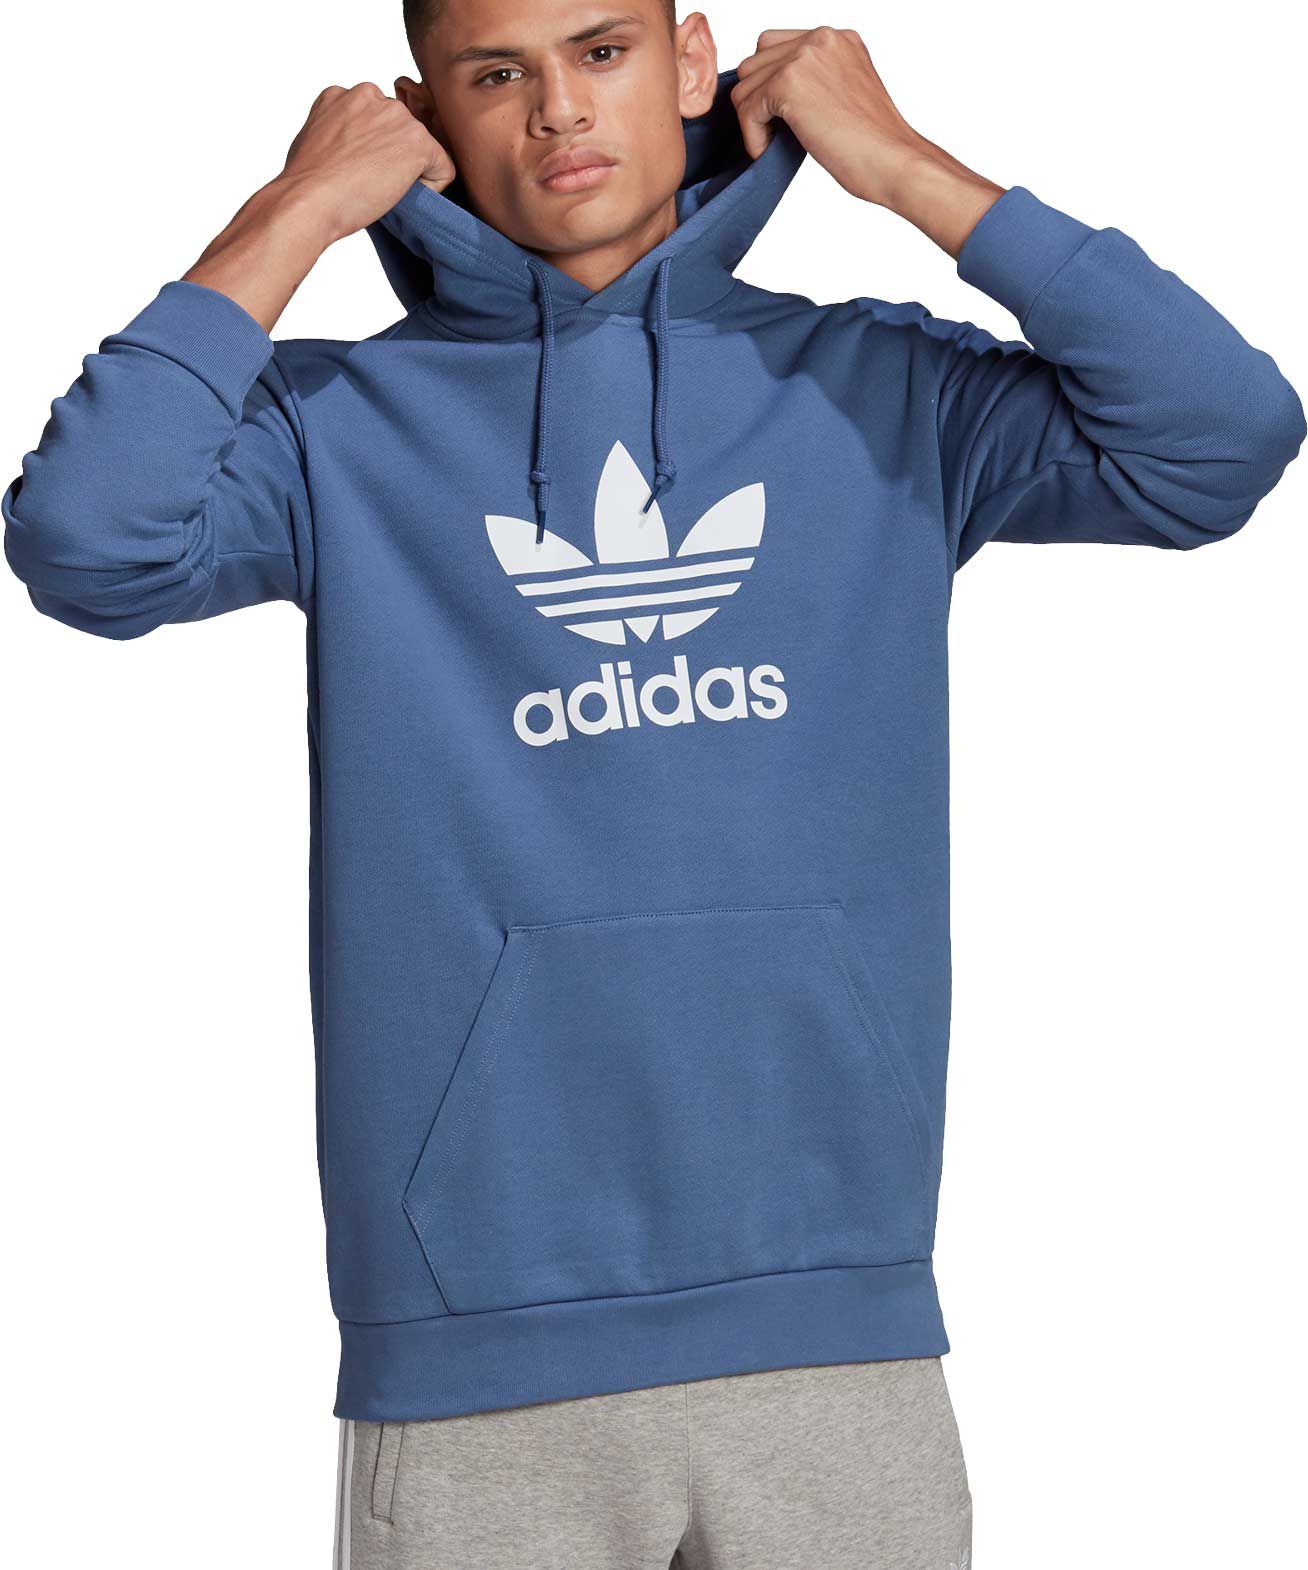 dicks adidas hoodie